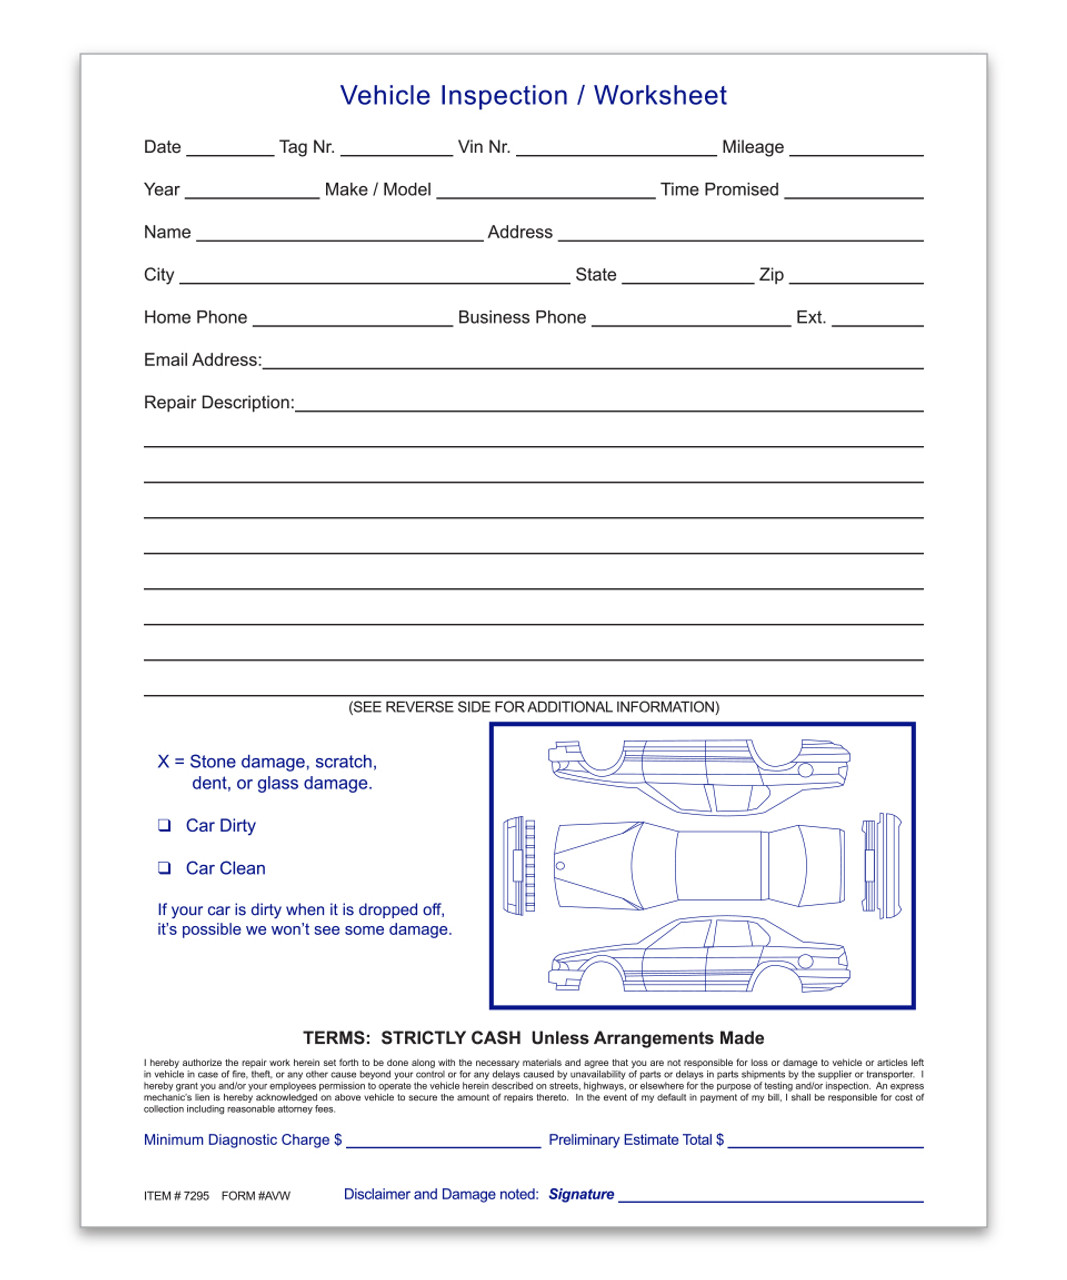 Vehicle Inspection Worksheet Form